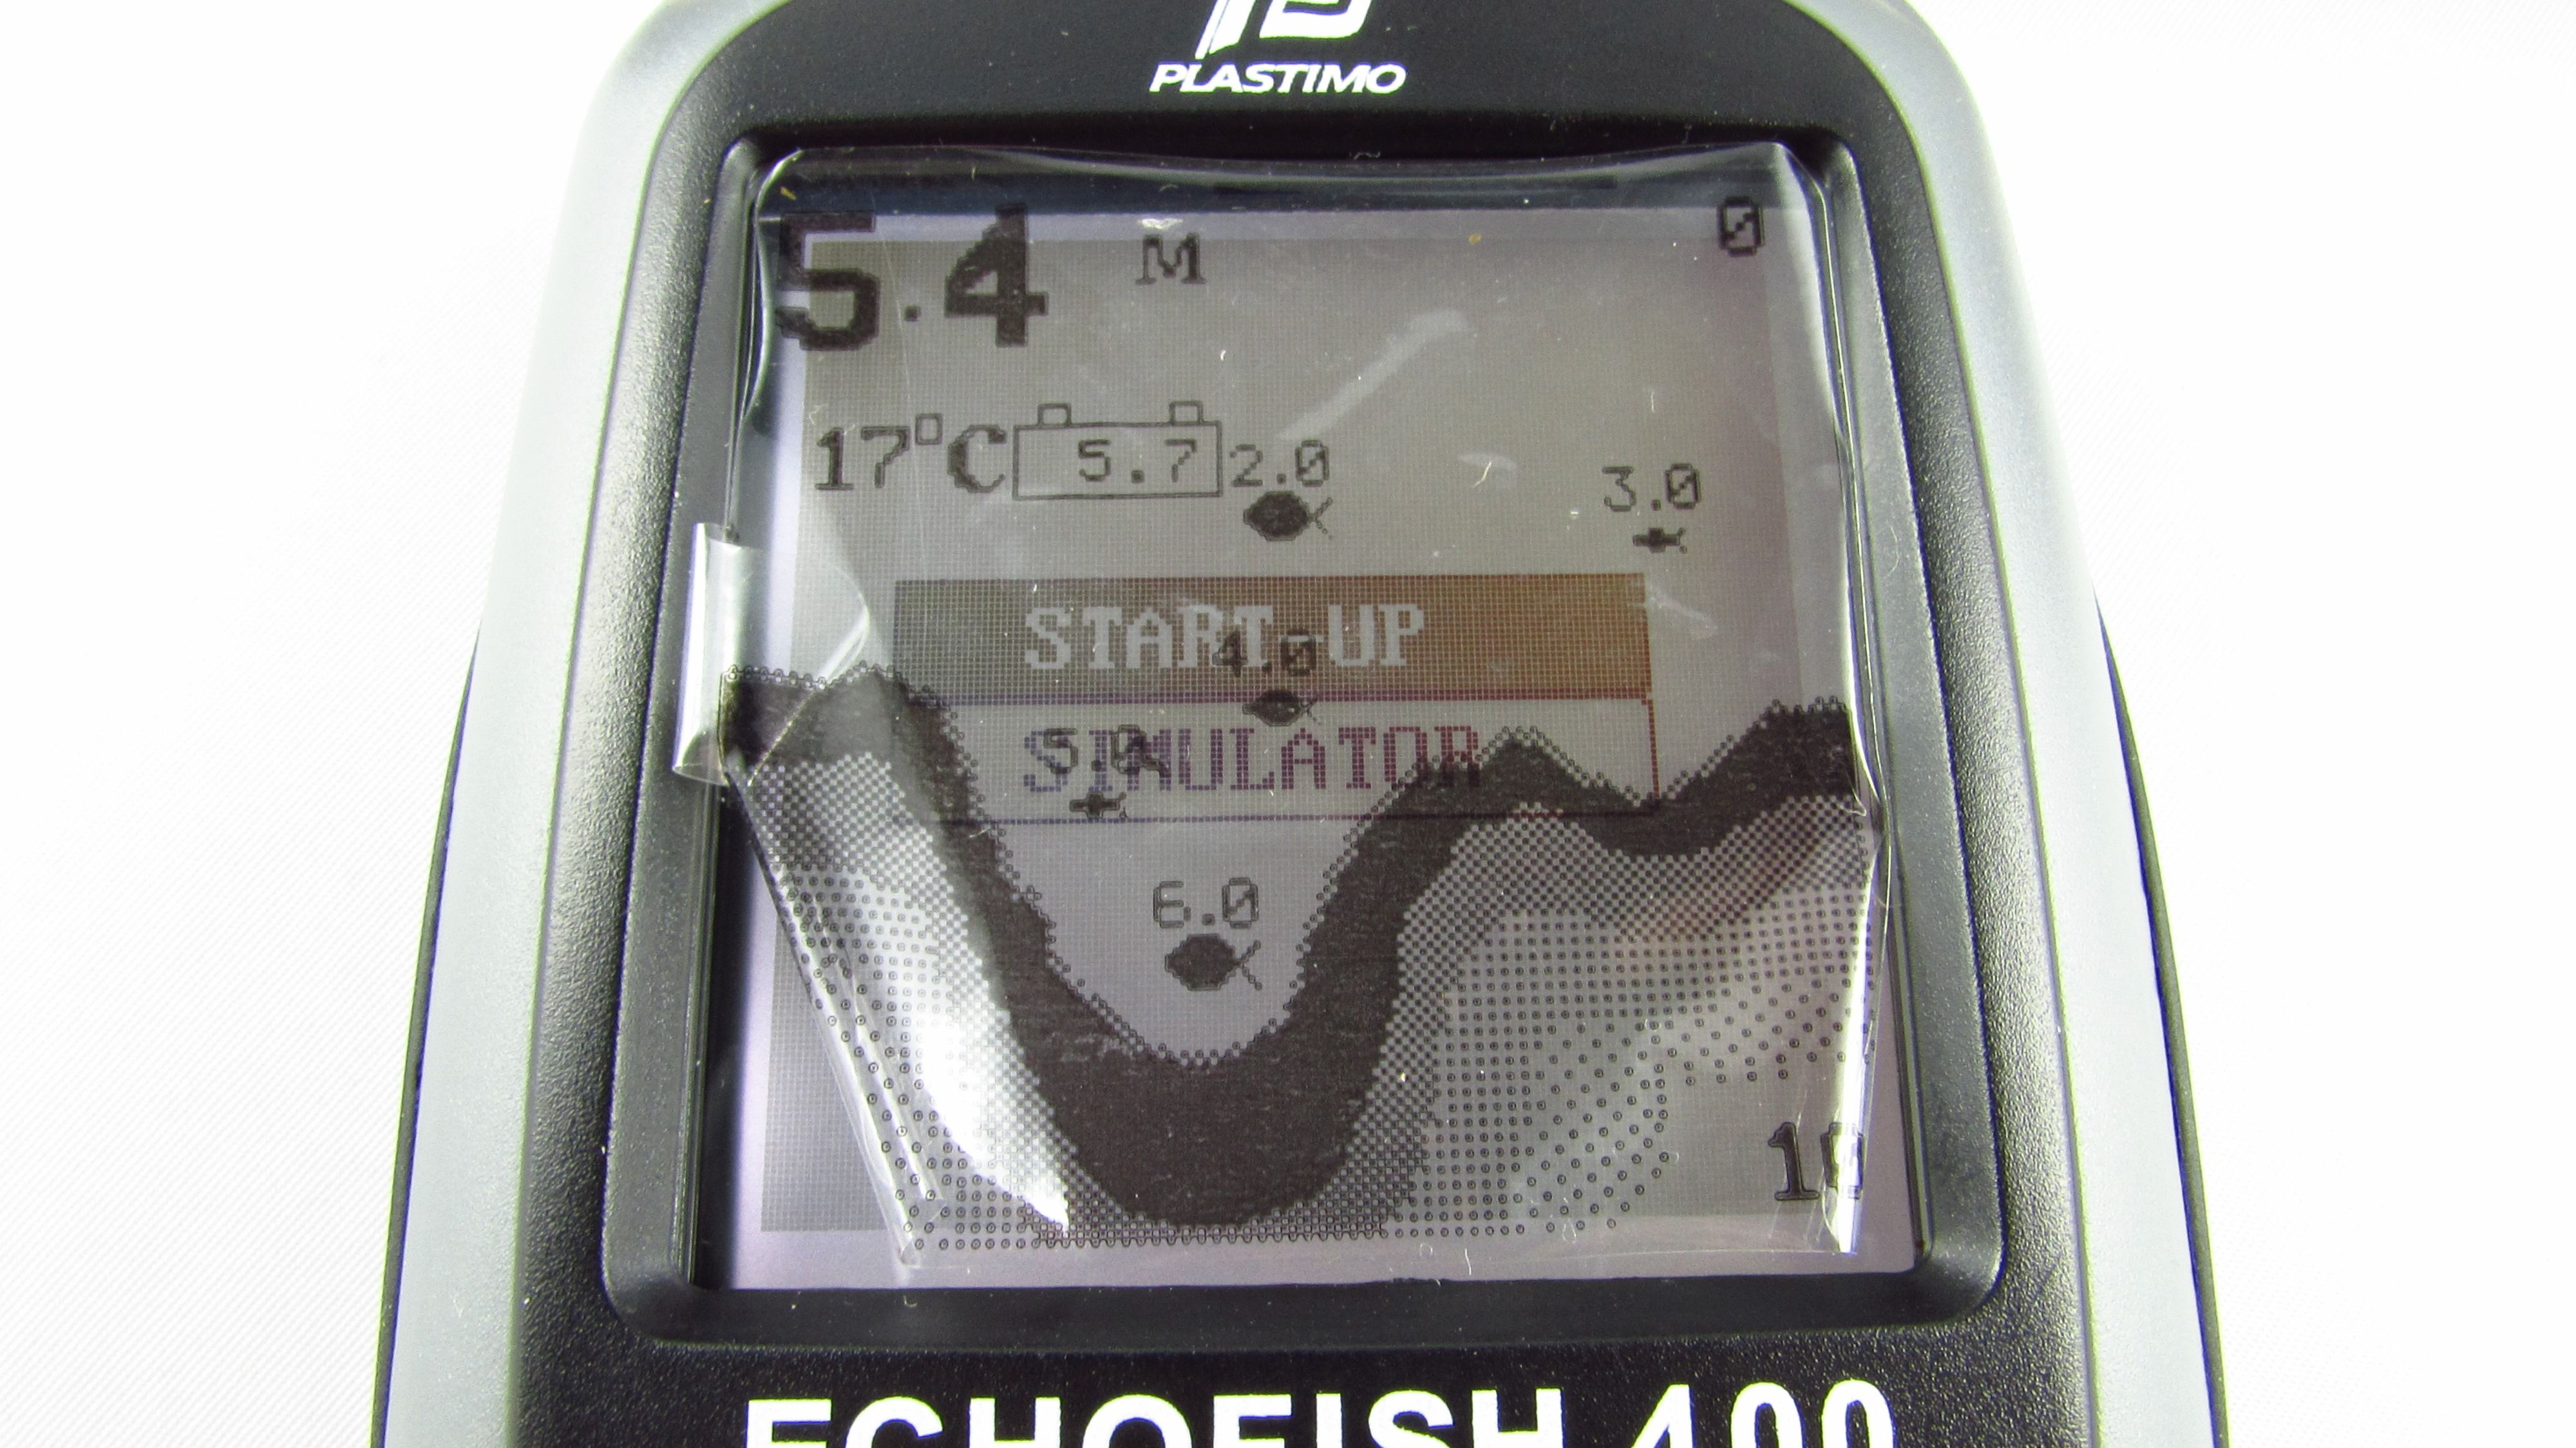 PLASTIMO - Echofish 400 Echosonda do połowu ryb